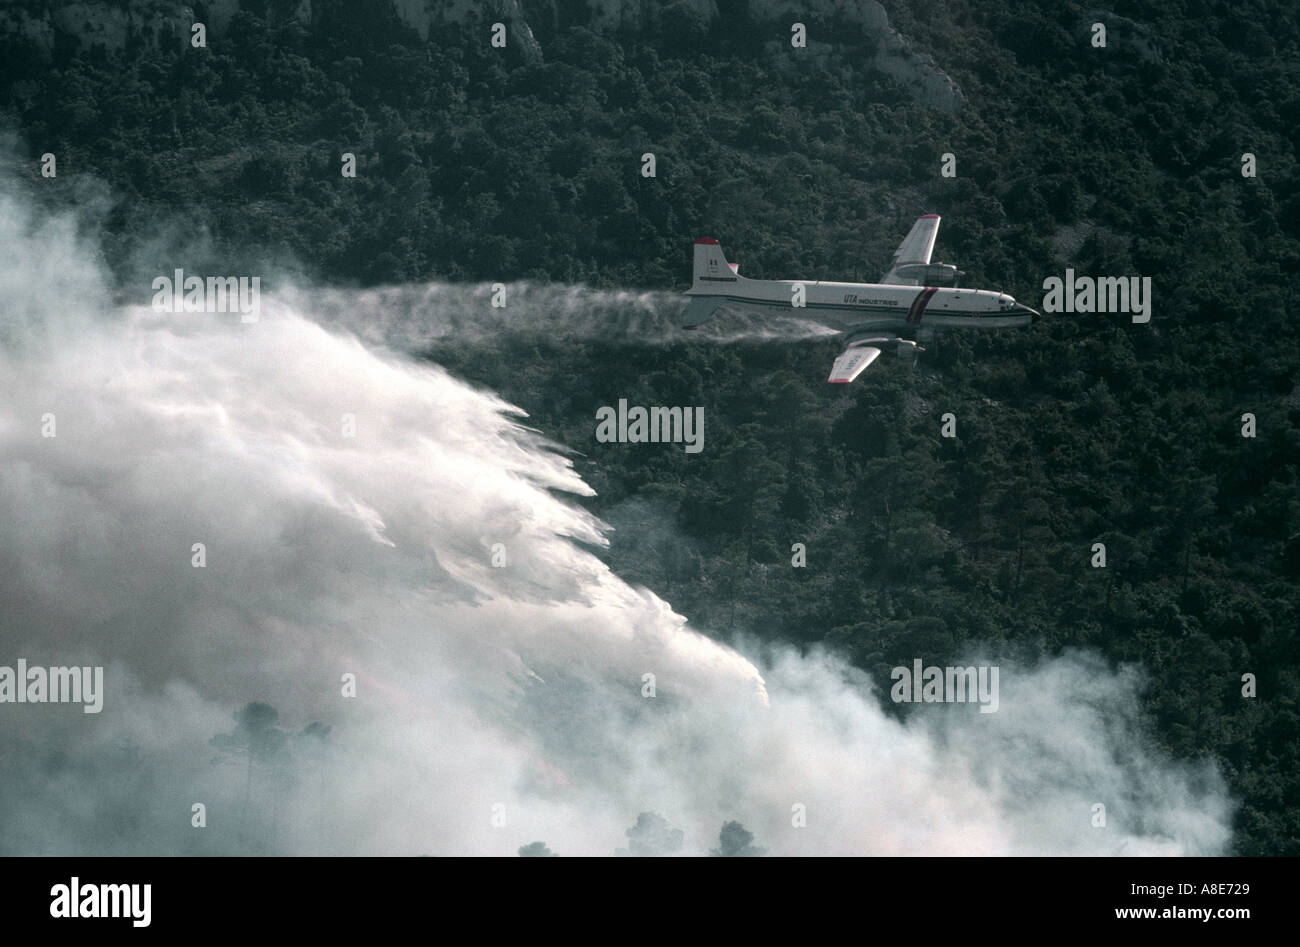 Vue aérienne d'un Douglas DC-6B avion bombardier d'eau de lutte contre l'abandon de l'eau sur un incendie de forêt incendie, fumée, Provence, France, Europe, Banque D'Images